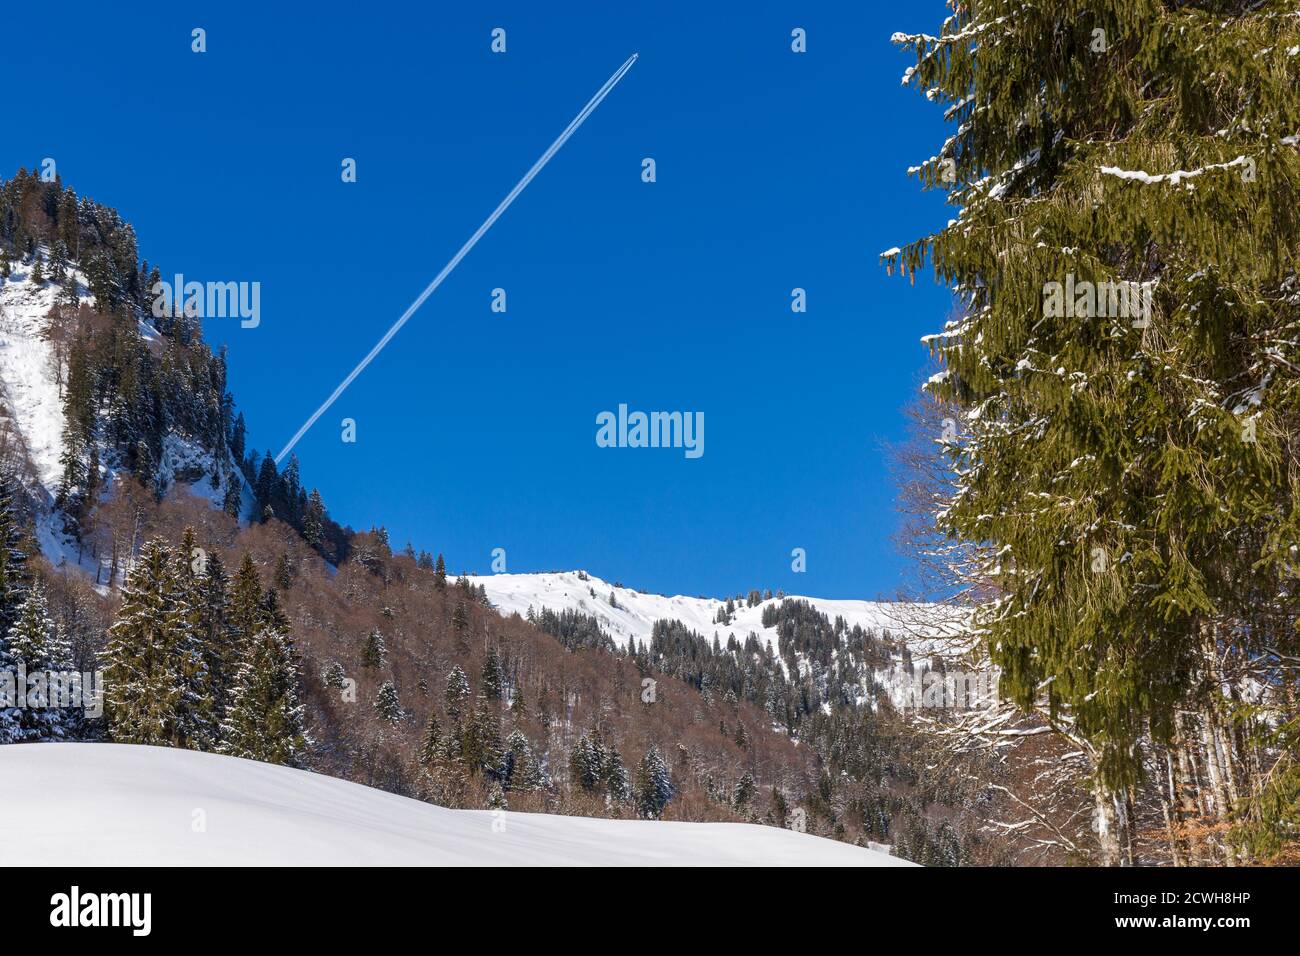 Winterlandschaft; Berge; Wald, verschneit; Flugzeug; Kondensstreifen Foto Stock